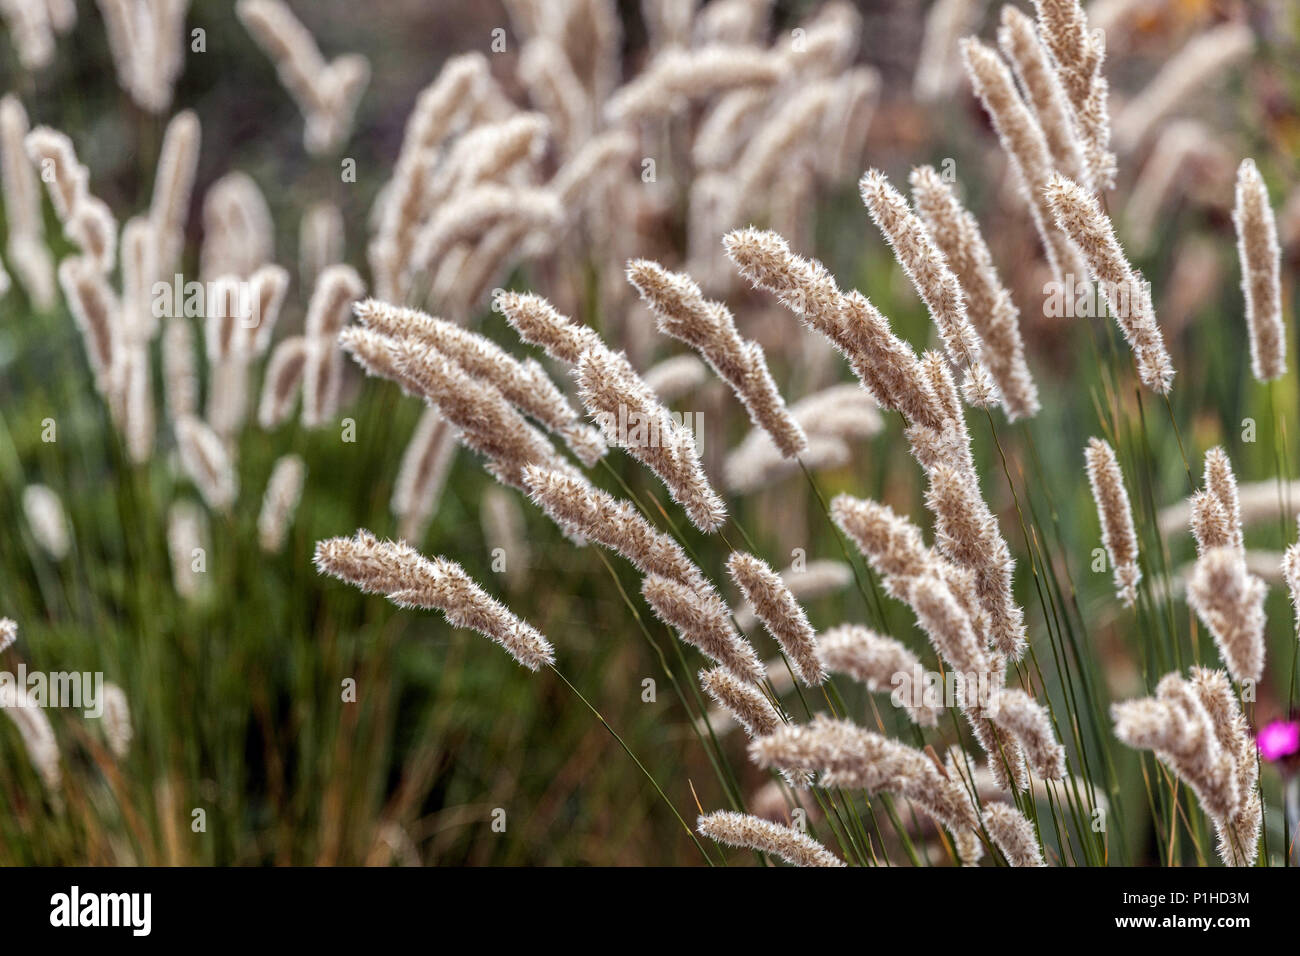 Melic grass, Melica transsilvanica, ornamental grasses Stock Photo